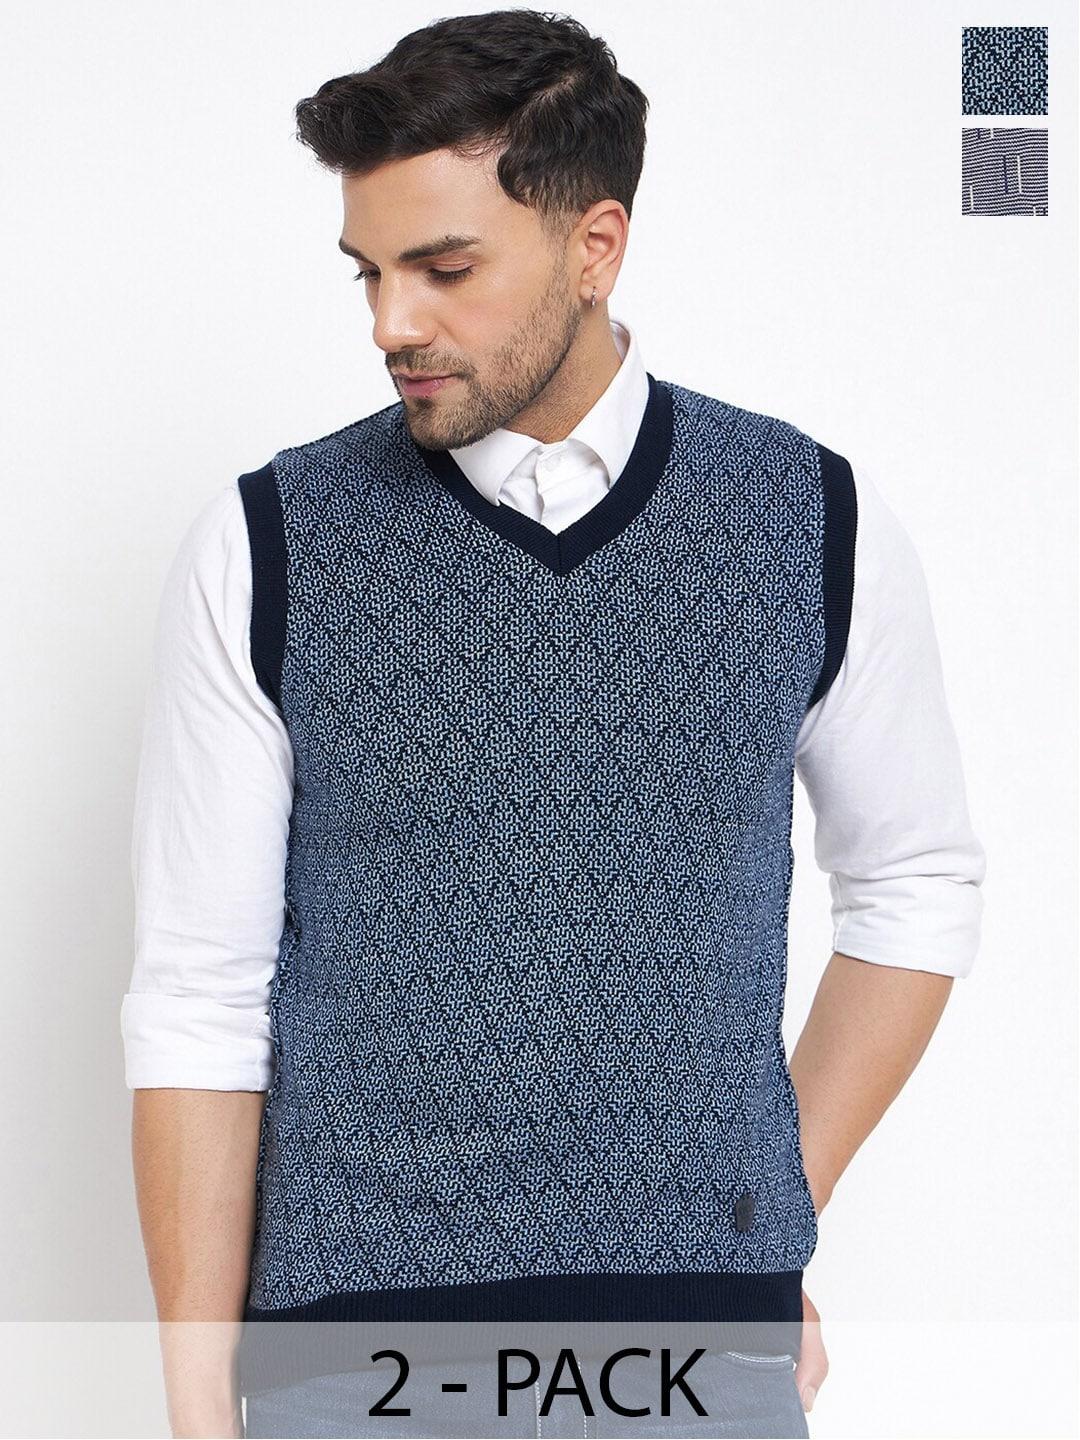 duke pack of 2 self design sleeveless sweater vests